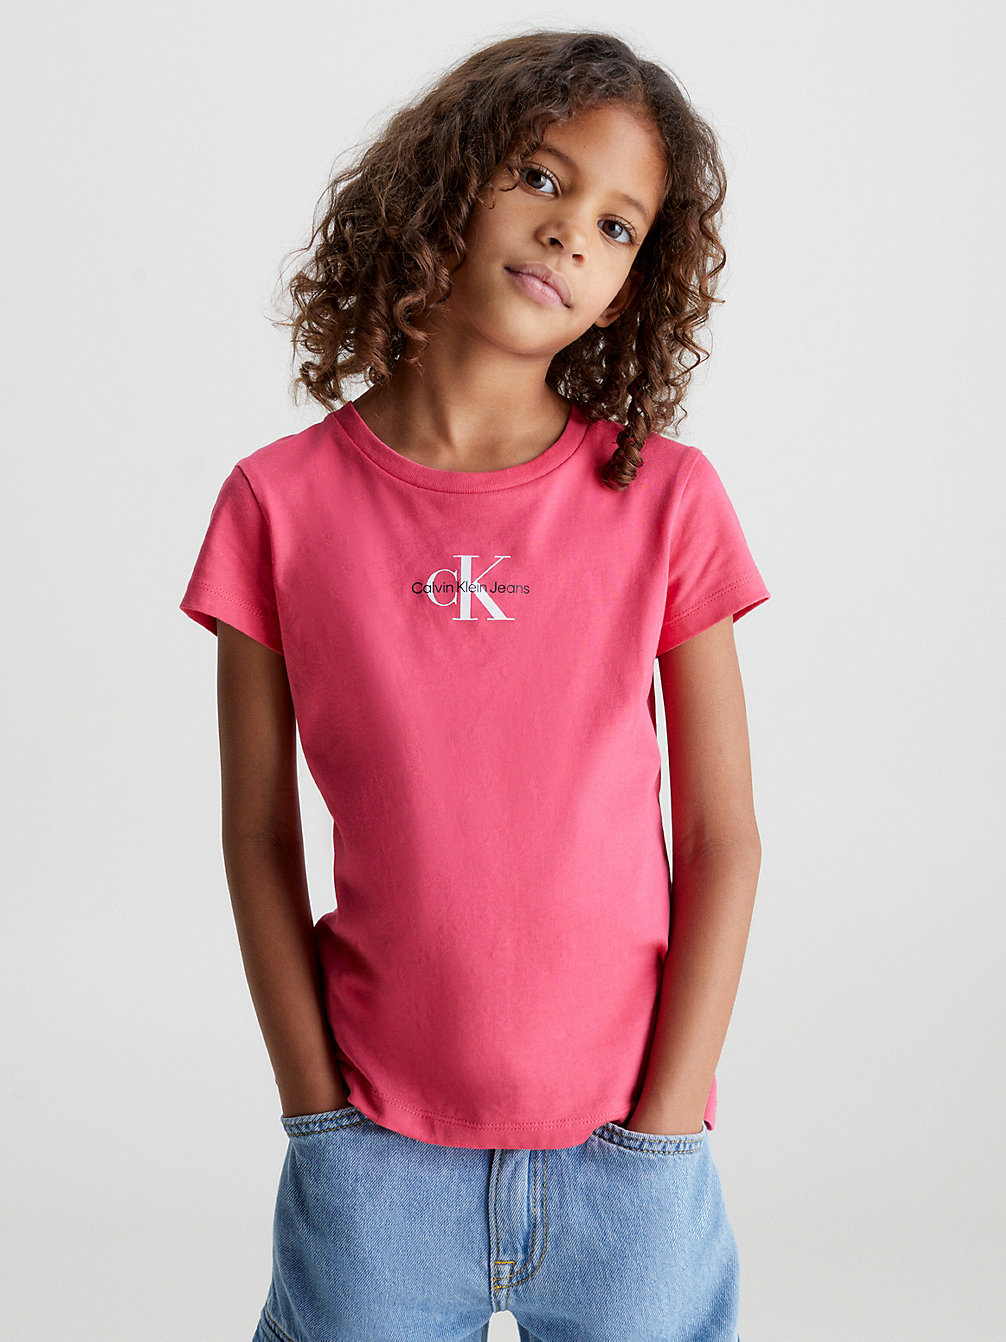 PINK FLASH Schmales T-Shirt Aus Bio-Baumwolle undefined Maedchen Calvin Klein